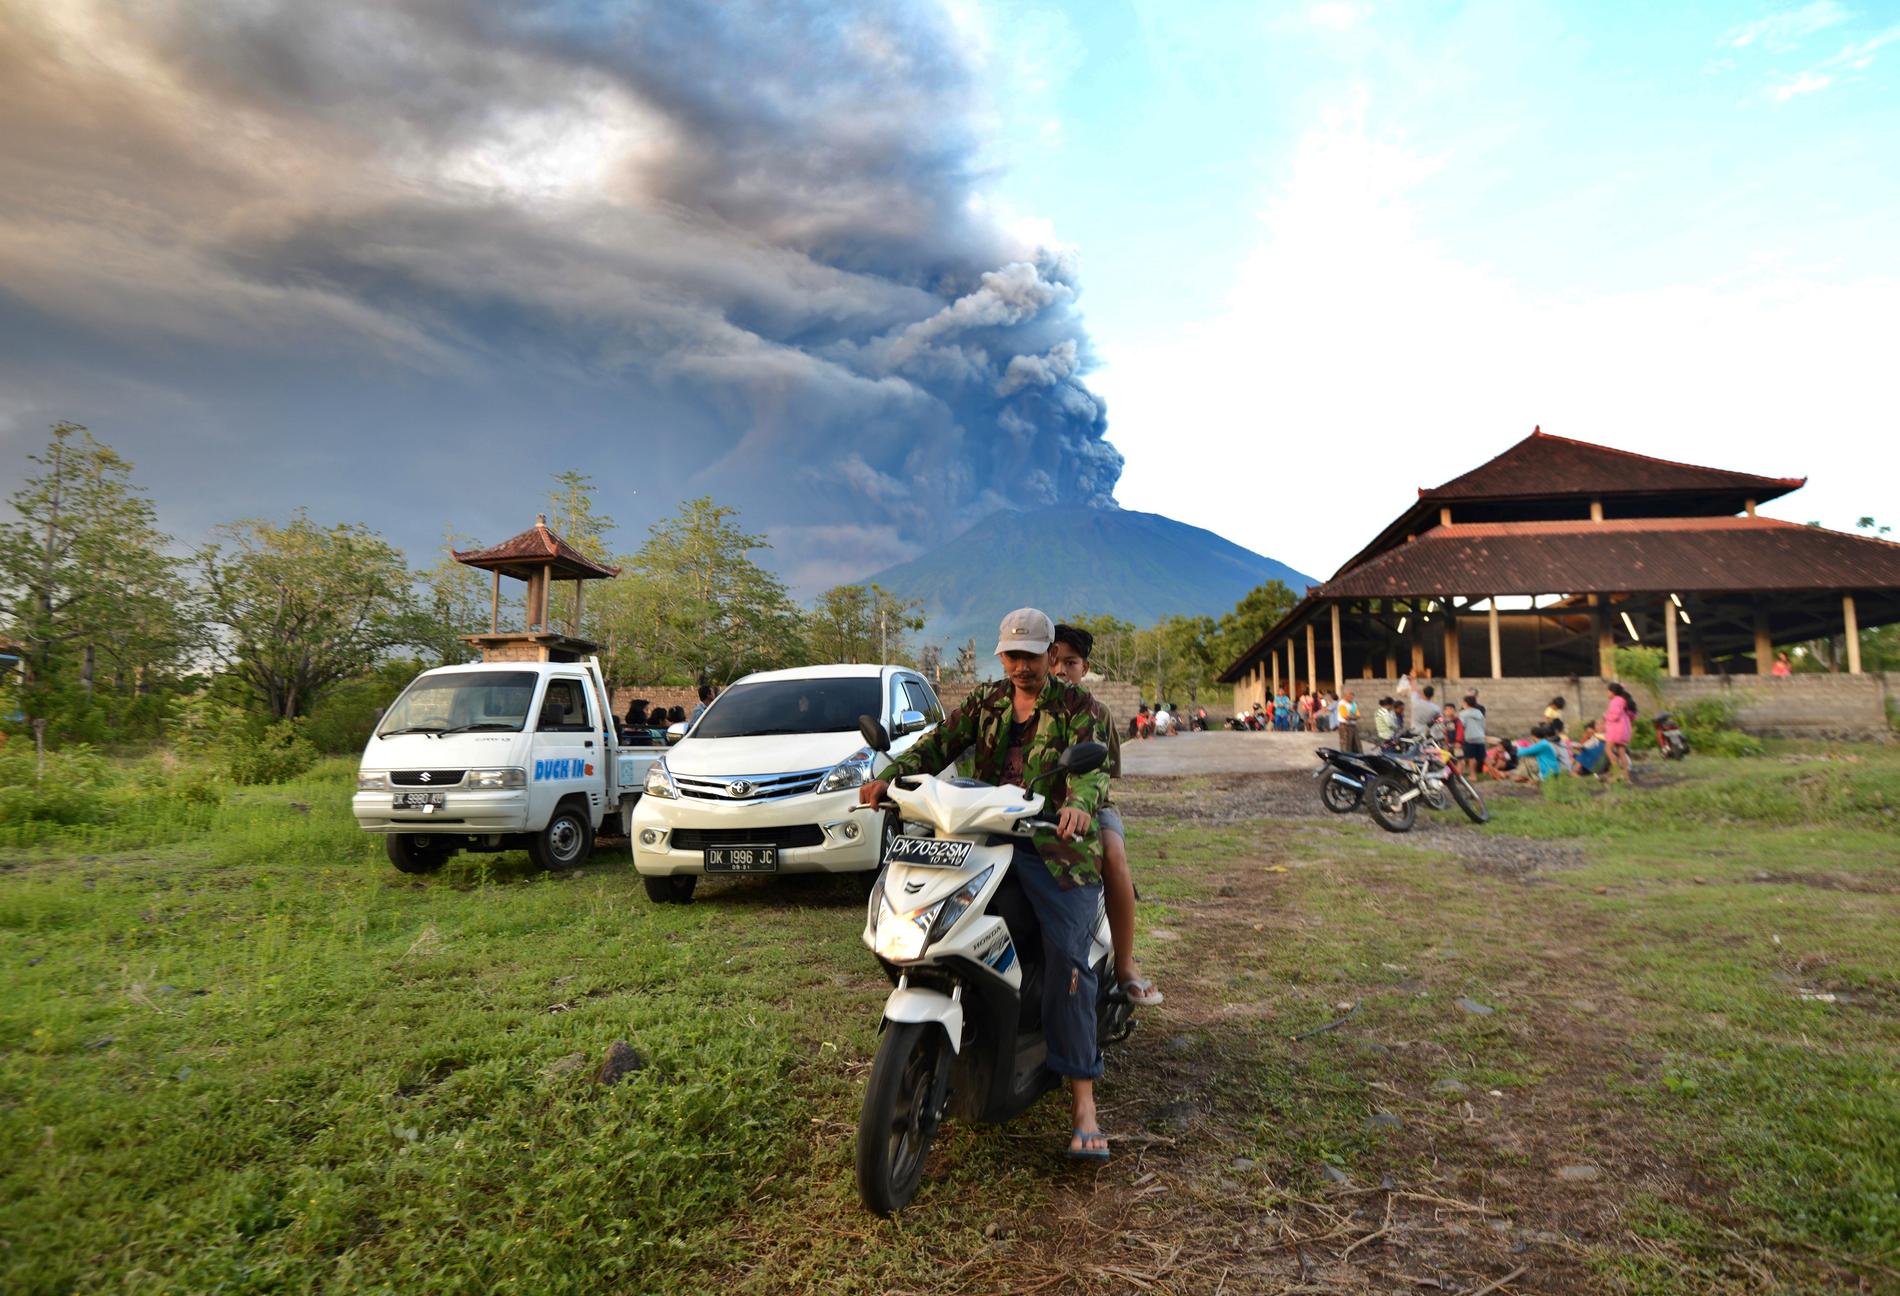 Omkring 25 000 människor i vulkanens närområde har evakuerats till någon av de cirka 200 lokaler som upprättats för evakuerade. 